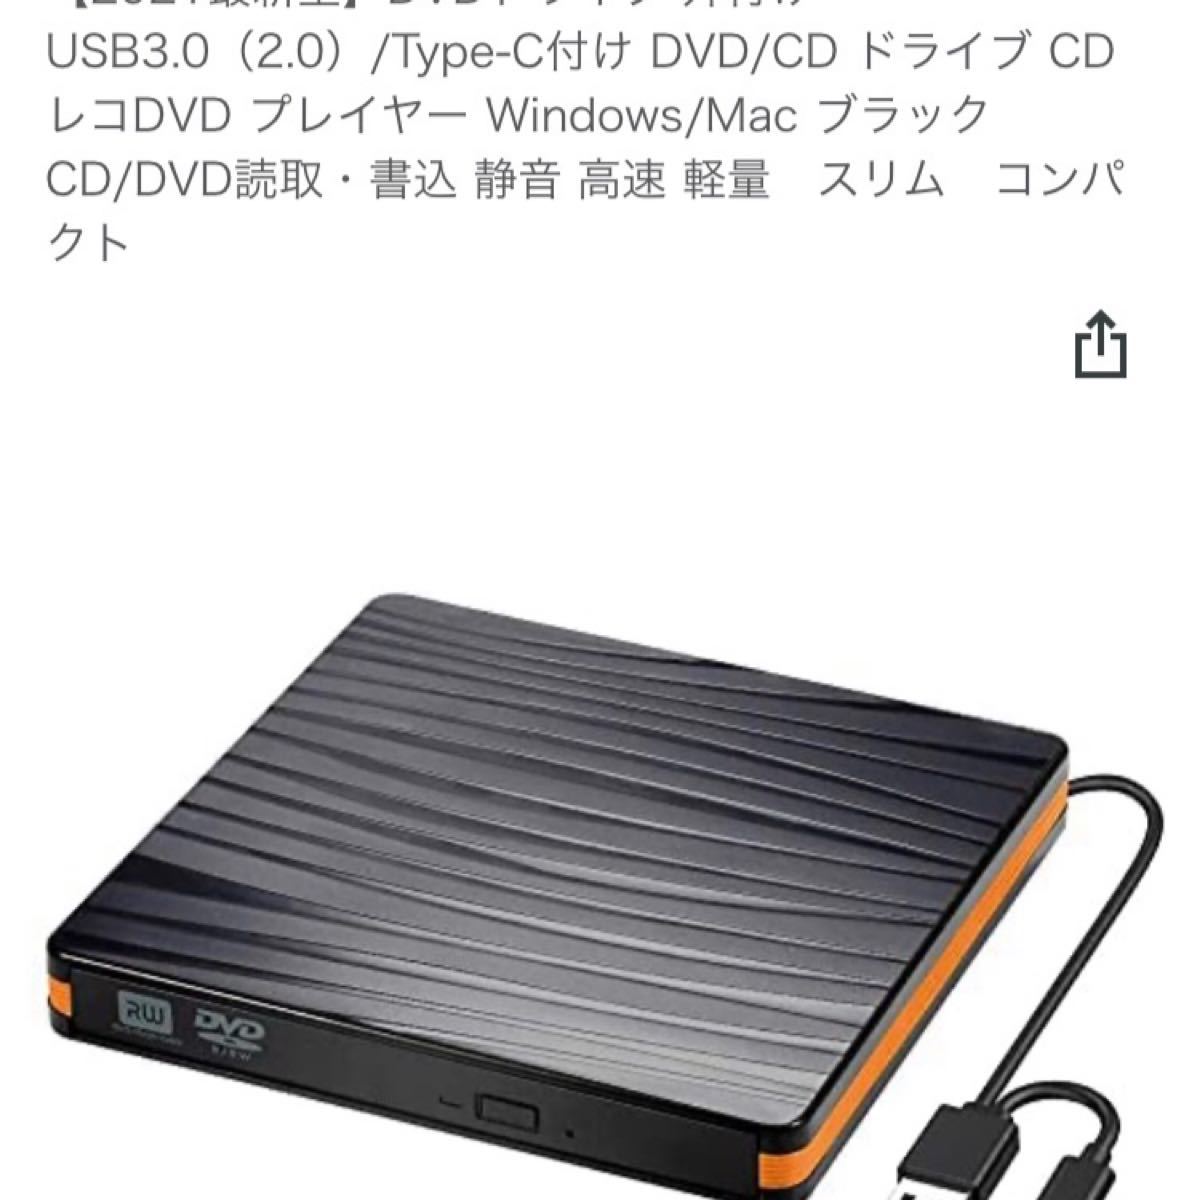 USB3.0 DVDドライブ 外付け 外付けDVDドライブ 